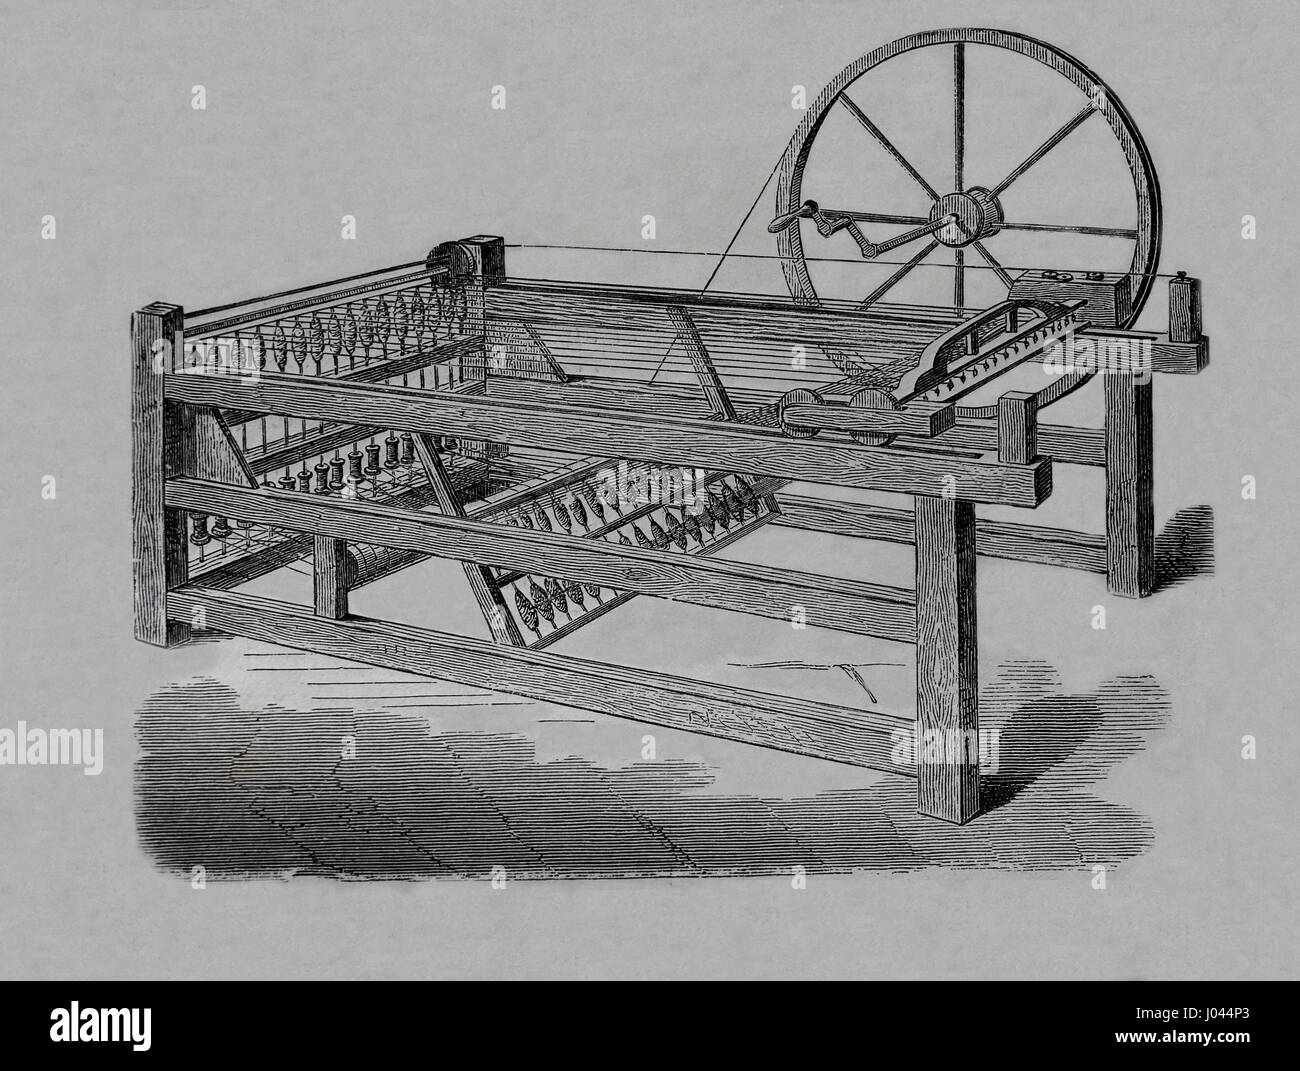 Industrielle Revolution. Hargreaves ist Spinning Jenny, in den 1760er Jahren erfunden. Gravur, Nuestro Siglo, 1883. Spanische Ausgabe. Stockfoto